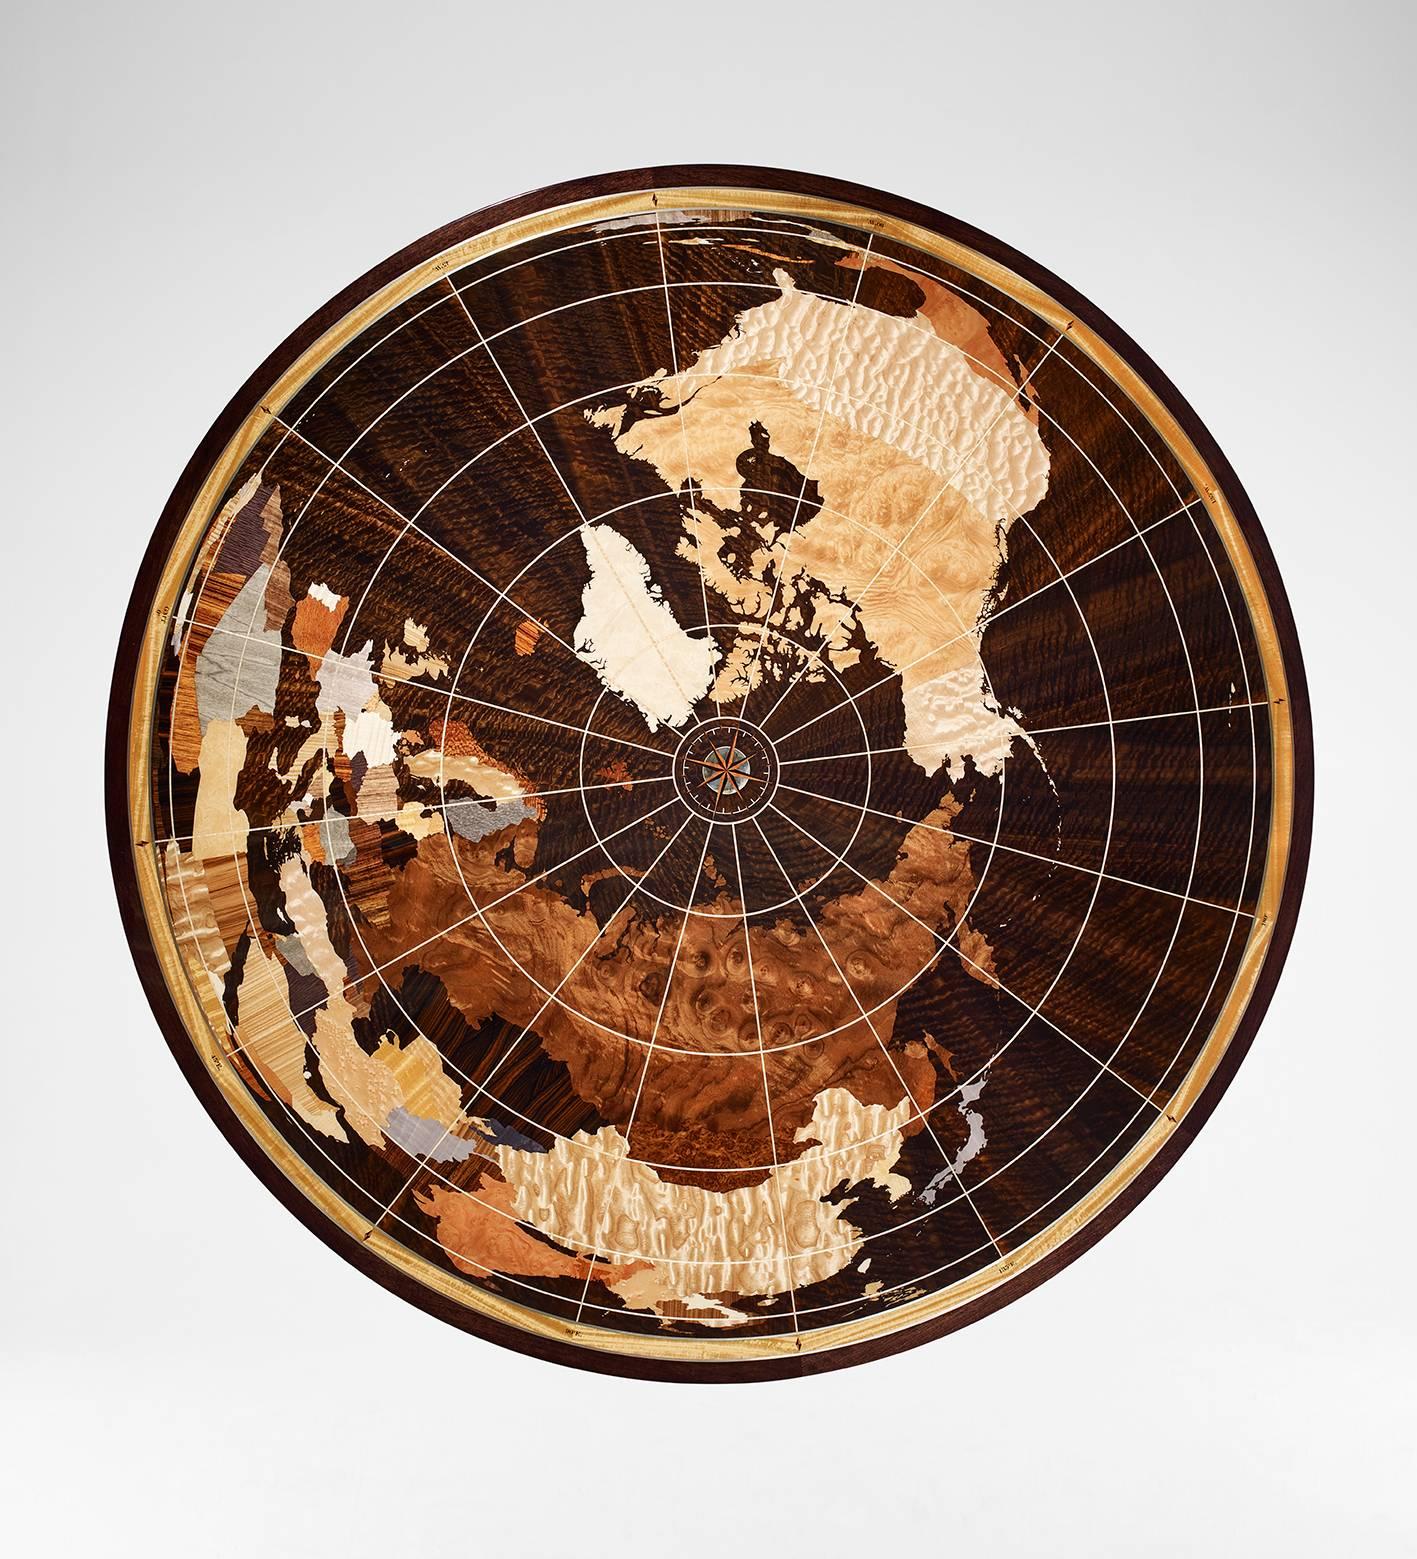 La table unique Linley World Map est fabriquée à la main par nos artisans spécialisés au Royaume-Uni à partir de plus de 40 placages sélectionnés individuellement.
Le corps principal de la table est réalisé en noyer Fulbeck teinté, avec une